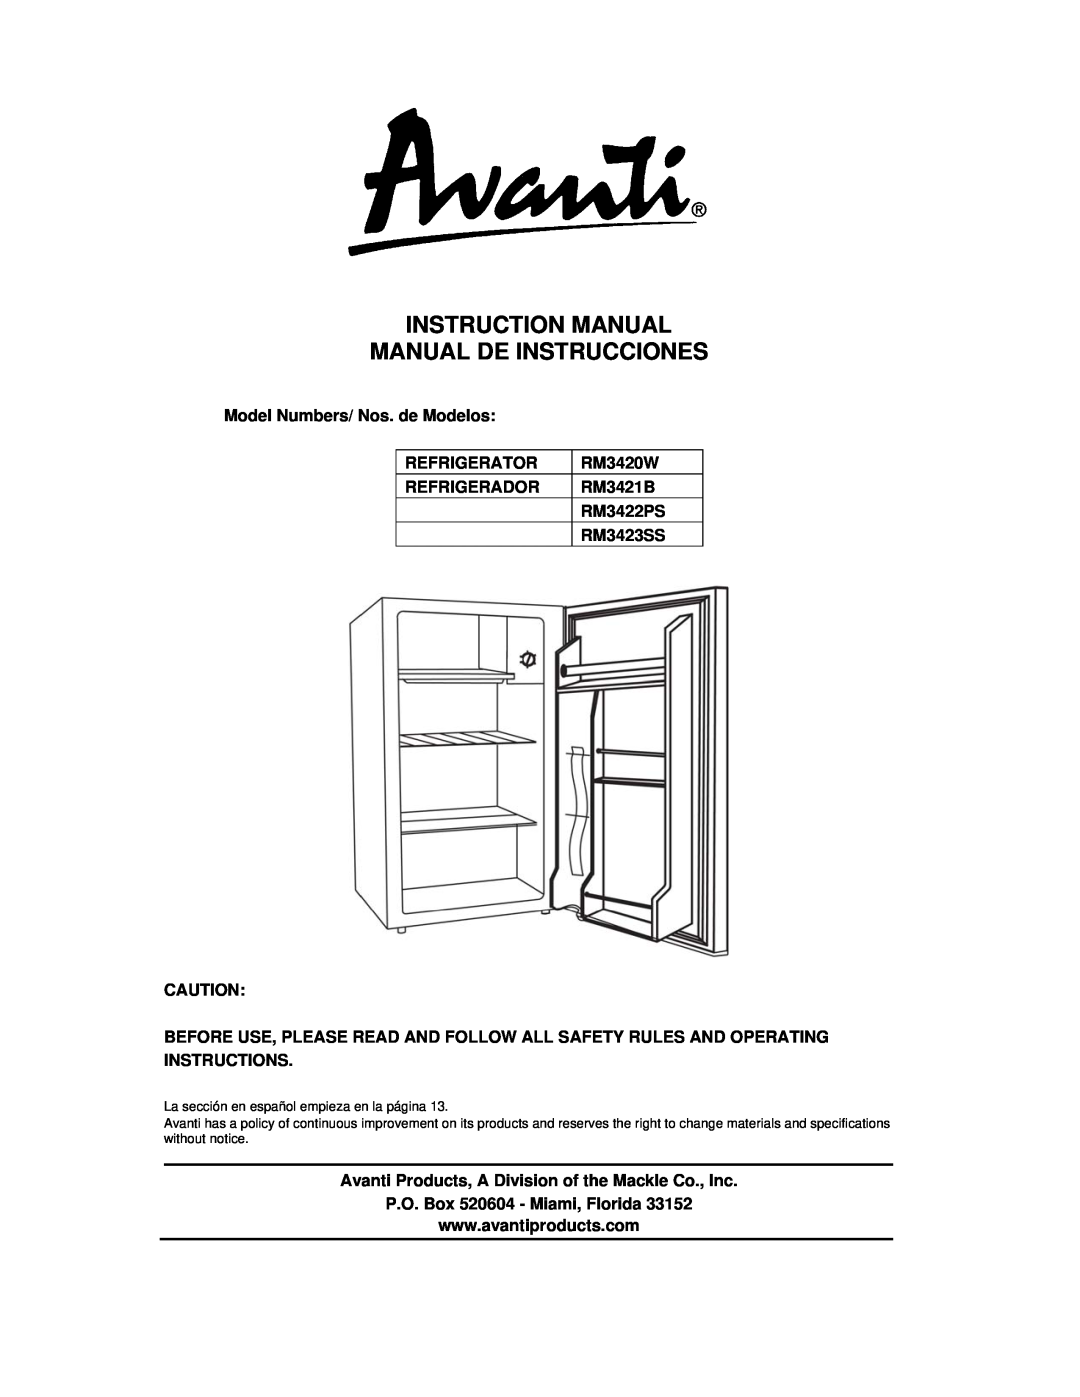 Avanti RM3420W instruction manual Model Numbers/ Nos. de Modelos, Refrigerator, Refrigerador, RM3421B, RM3422PS, RM3423SS 